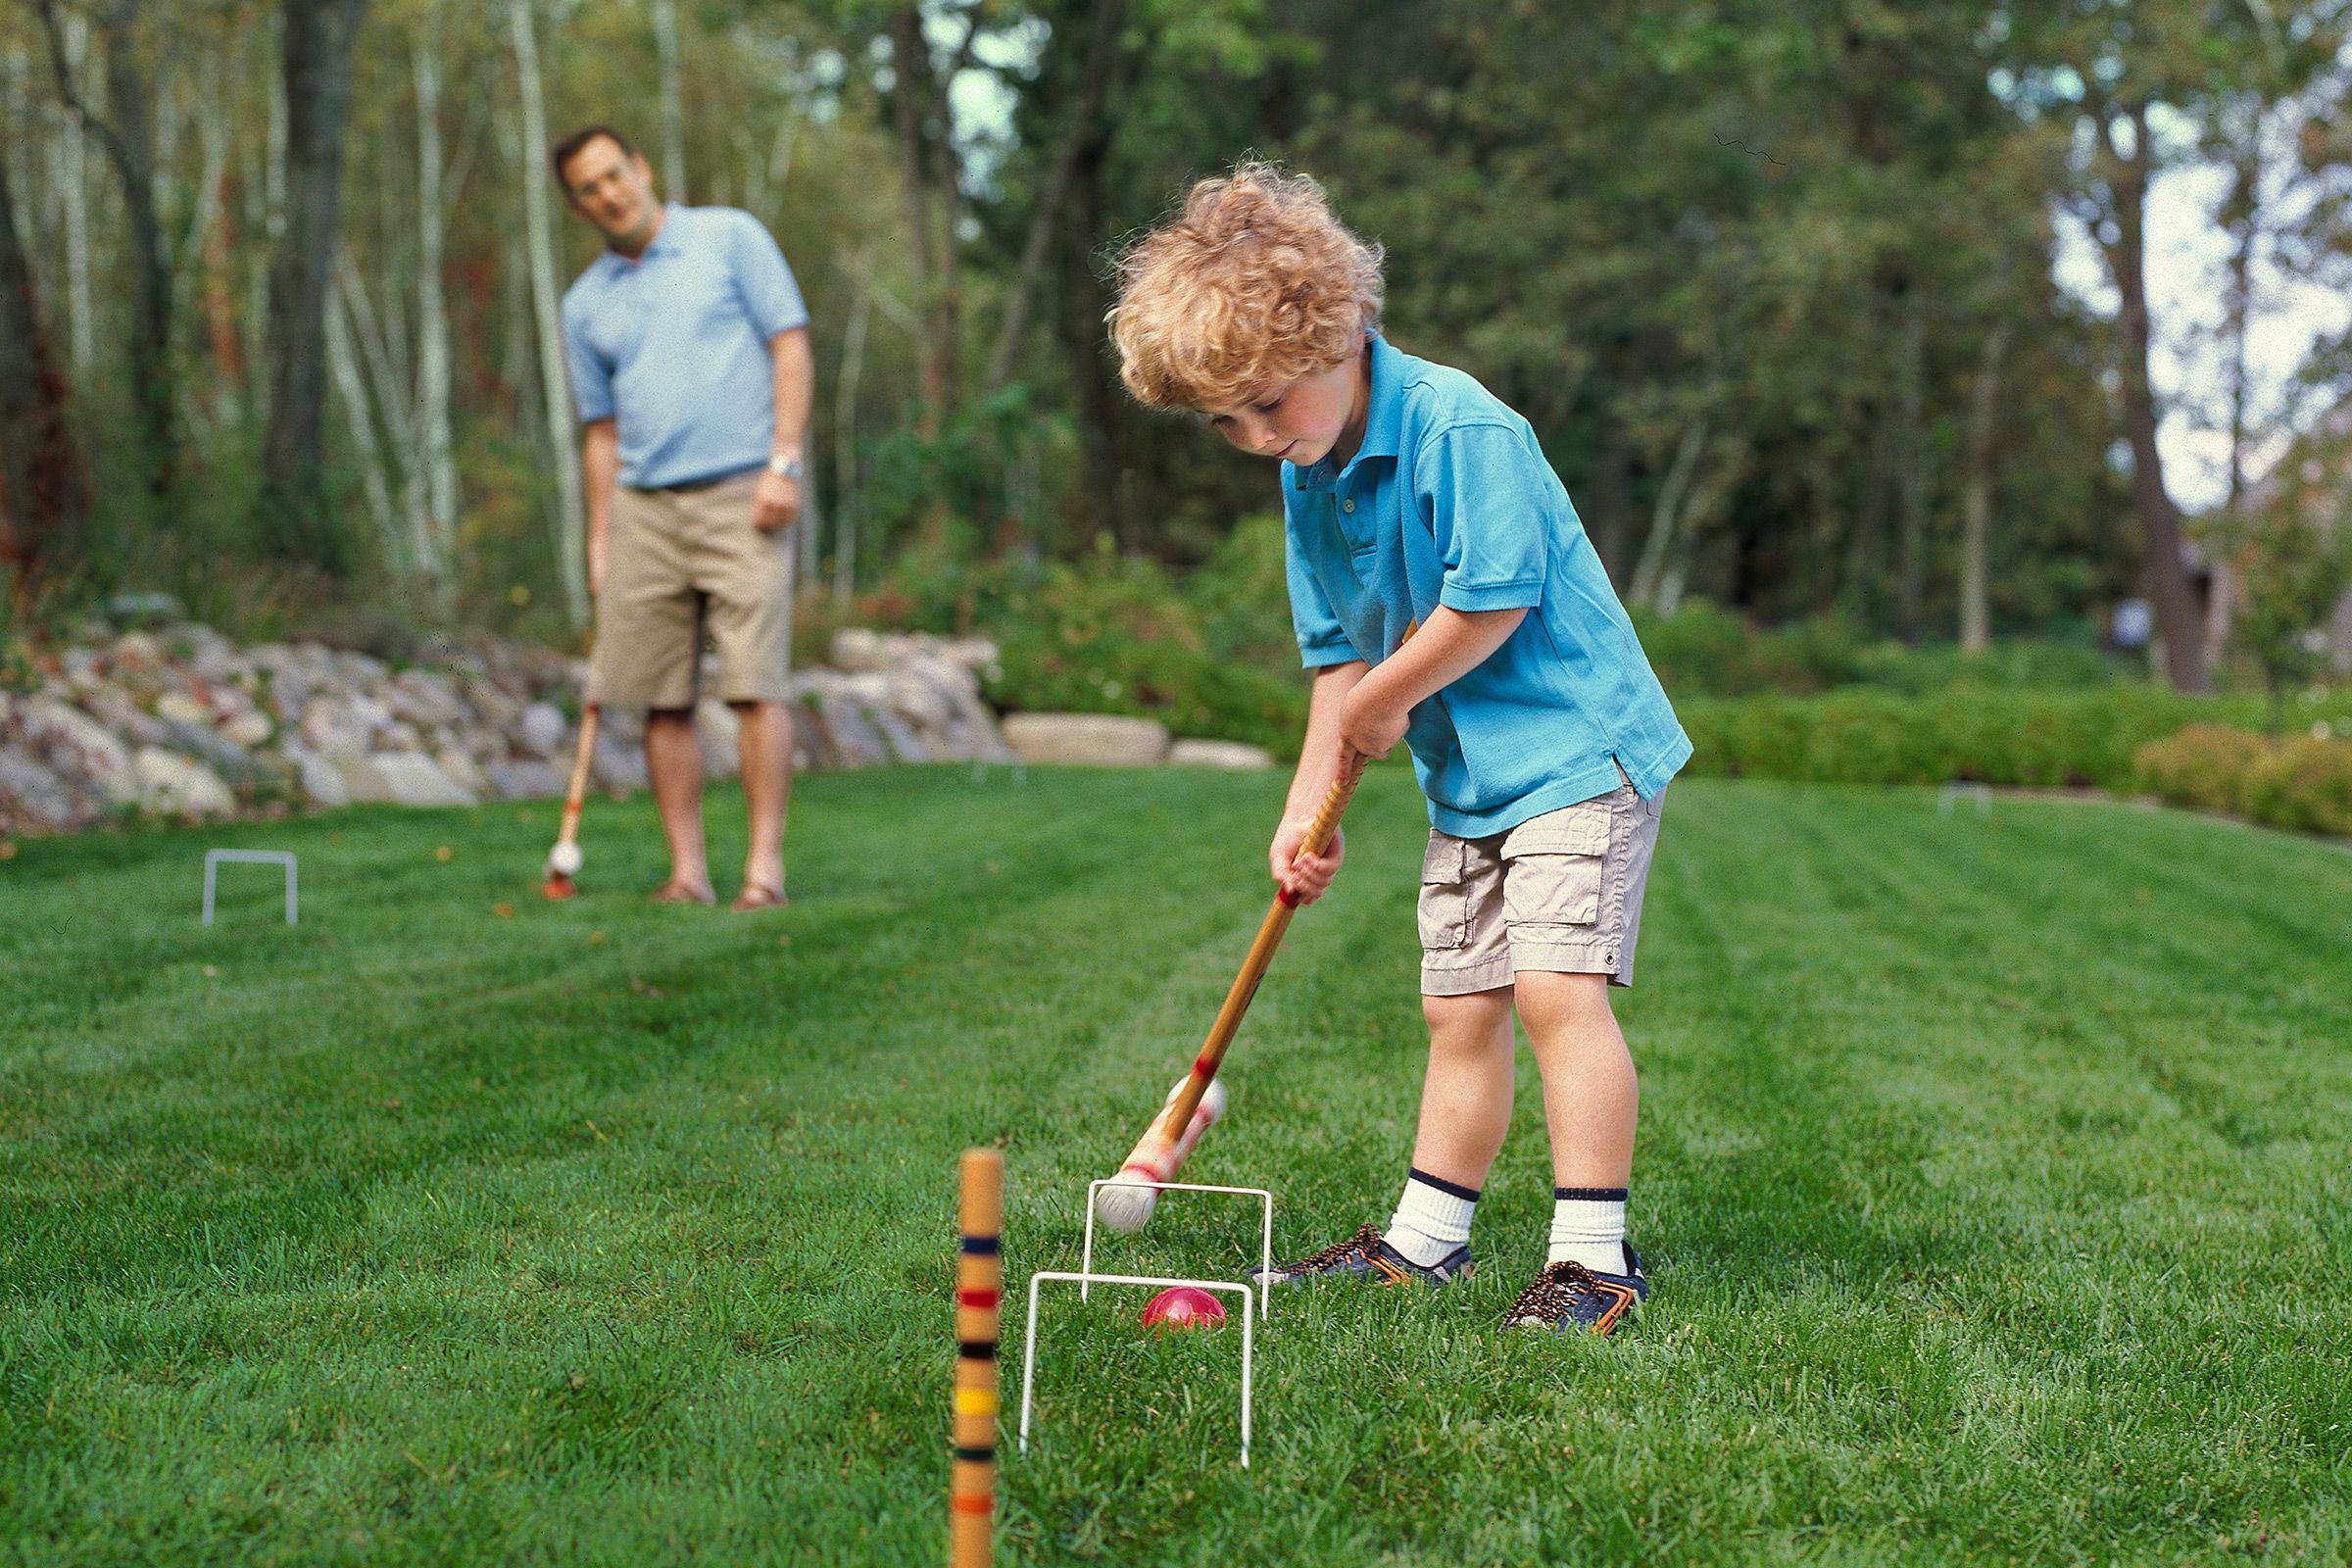 36 Fun DIY Outdoor Games for Kids - Fun Backyard Games